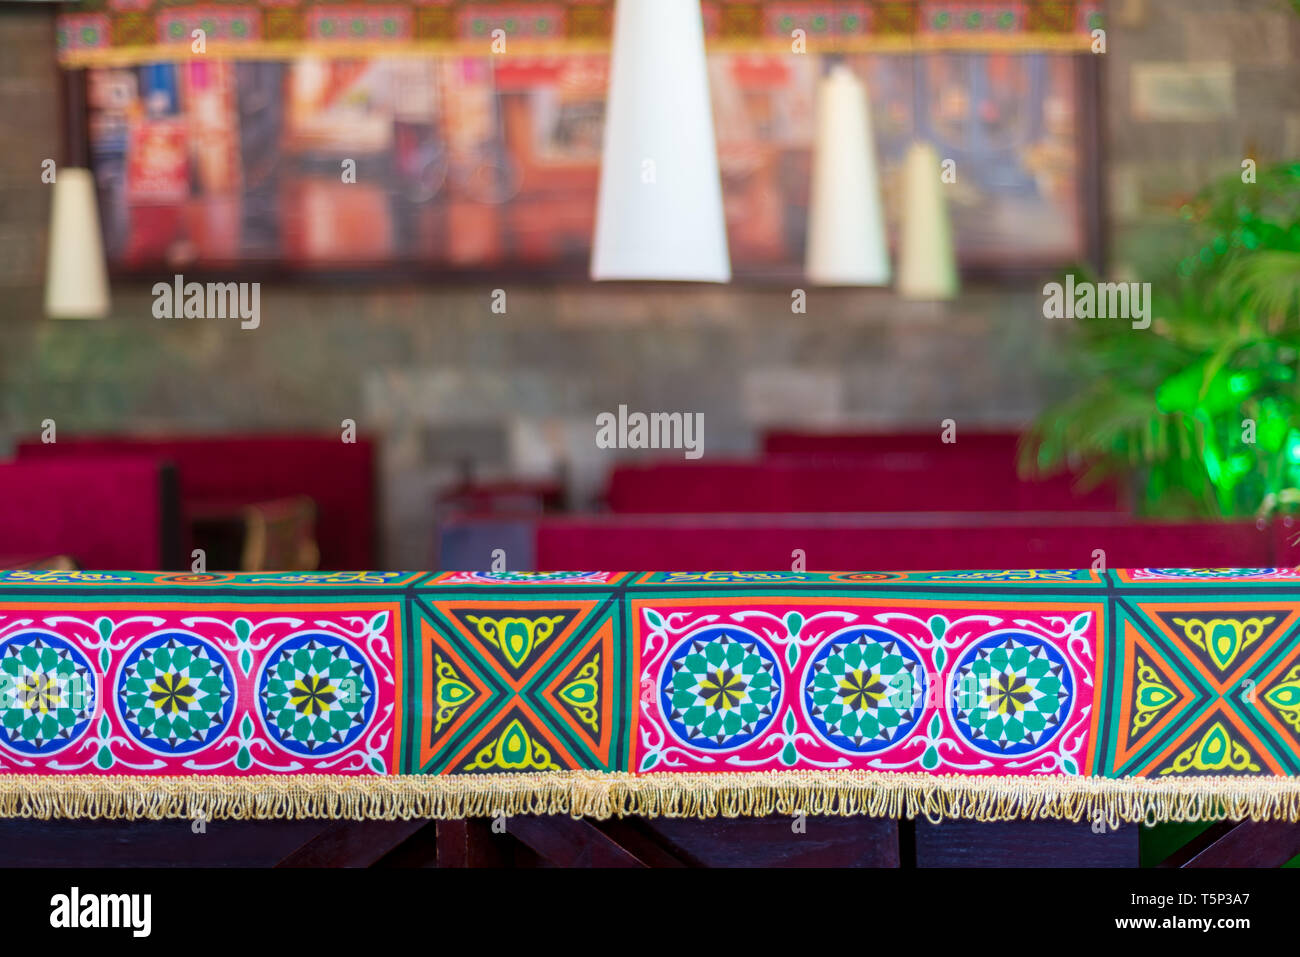 Traditionelle Ramadan Dekorationen mit verschwommenen Hintergrund von Tabellen, Laternen und grünen Pflanzen Stockfoto